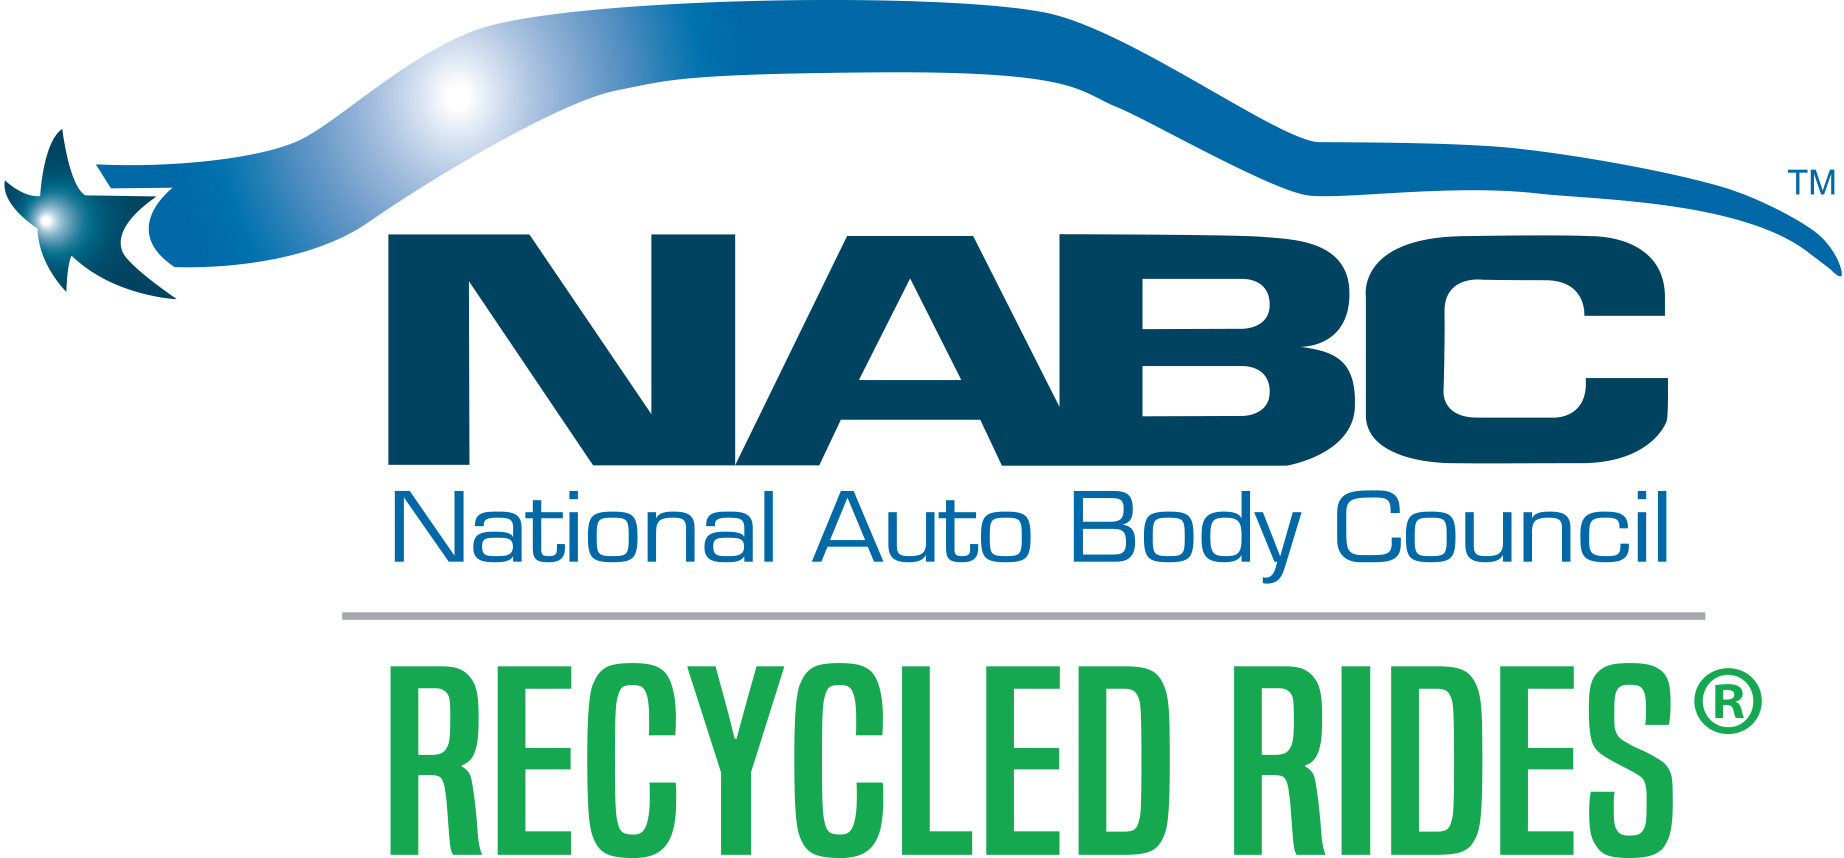 NABC_RecycledRides_Logo_2019.jpg